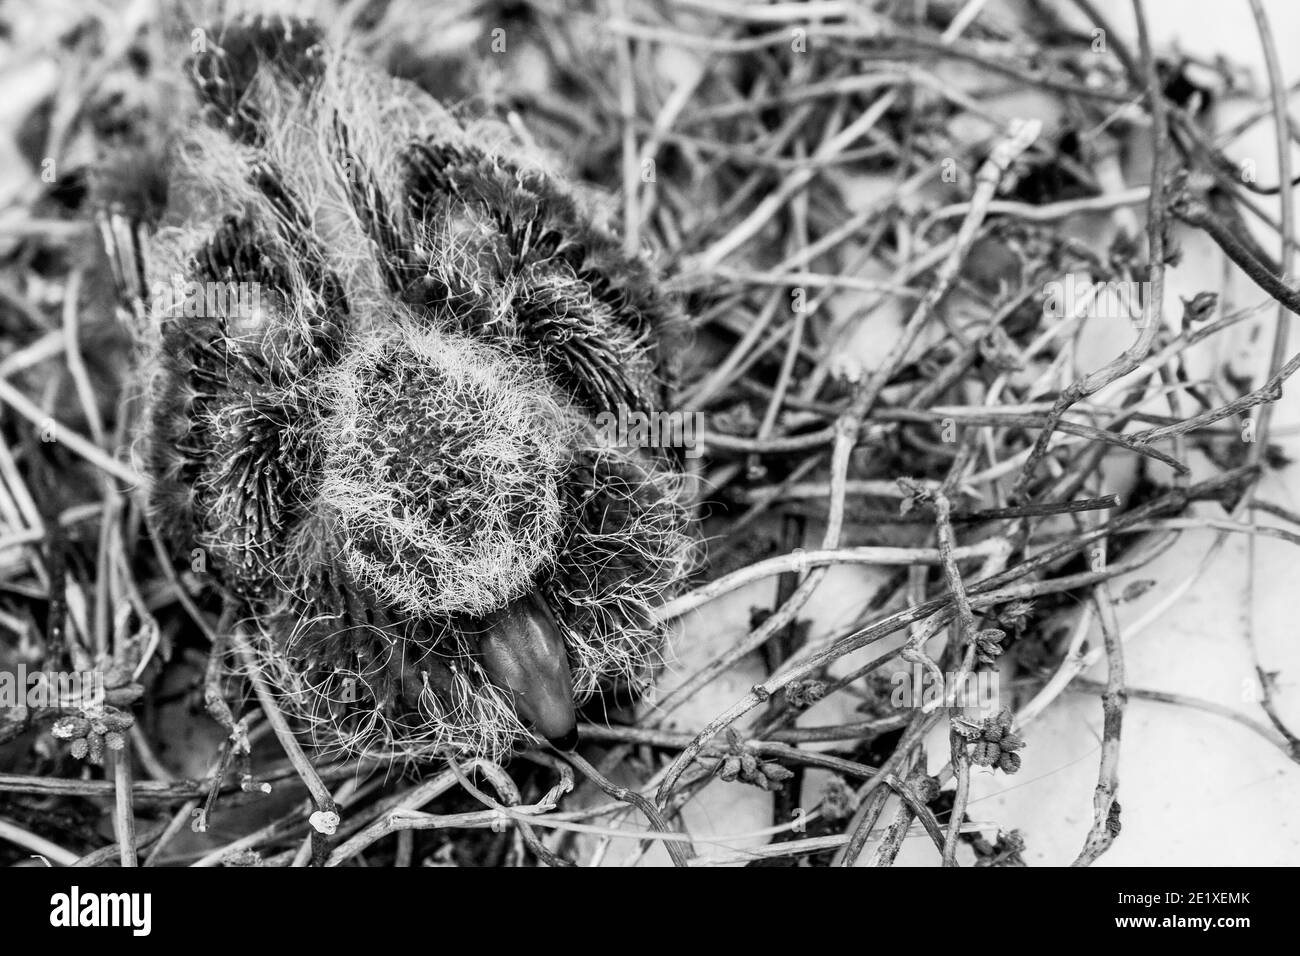 Squab (petite colombe) dans le nid de l'oiseau attendant que ses parents apportent de la nourriture. Plumes noires et jaunes émergeant du poussin de colombe. Noir et blanc - monosynchro Banque D'Images